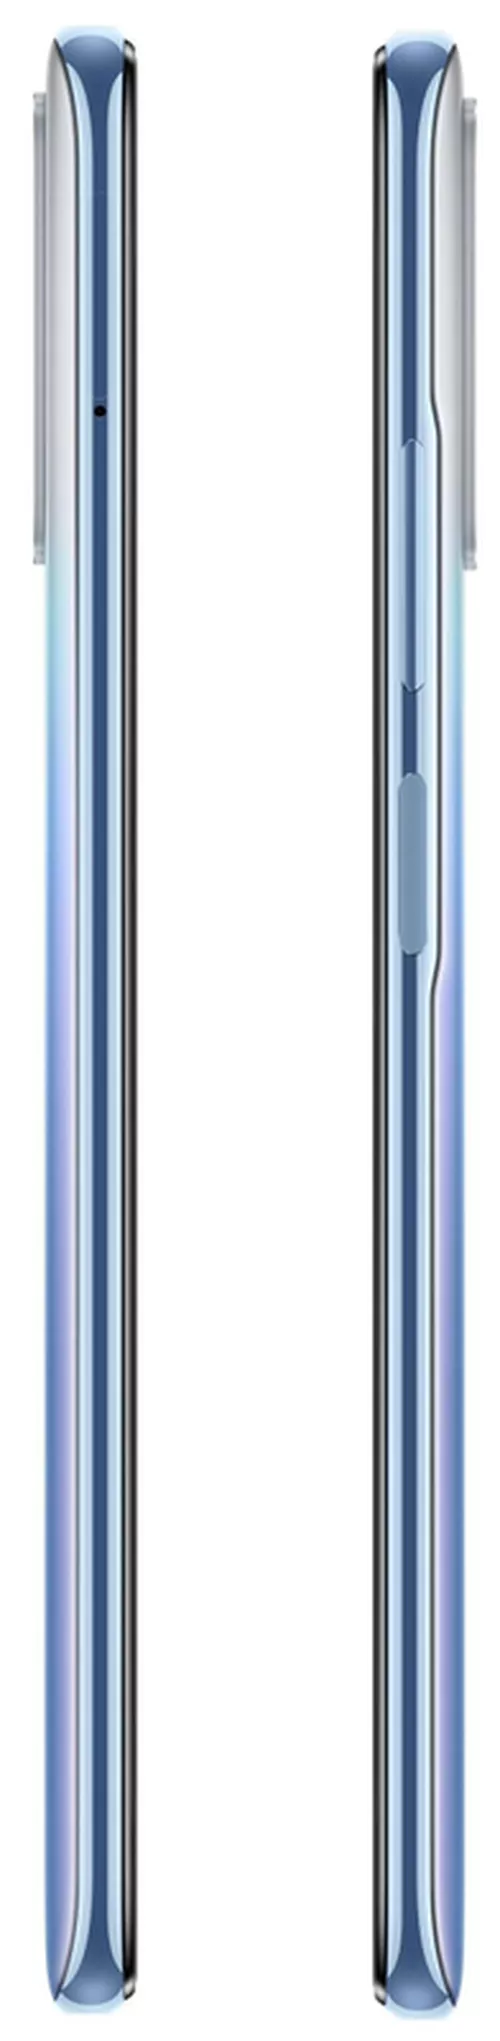 купить Смартфон Xiaomi Redmi Note 10S 6/128Gb Blue в Кишинёве 